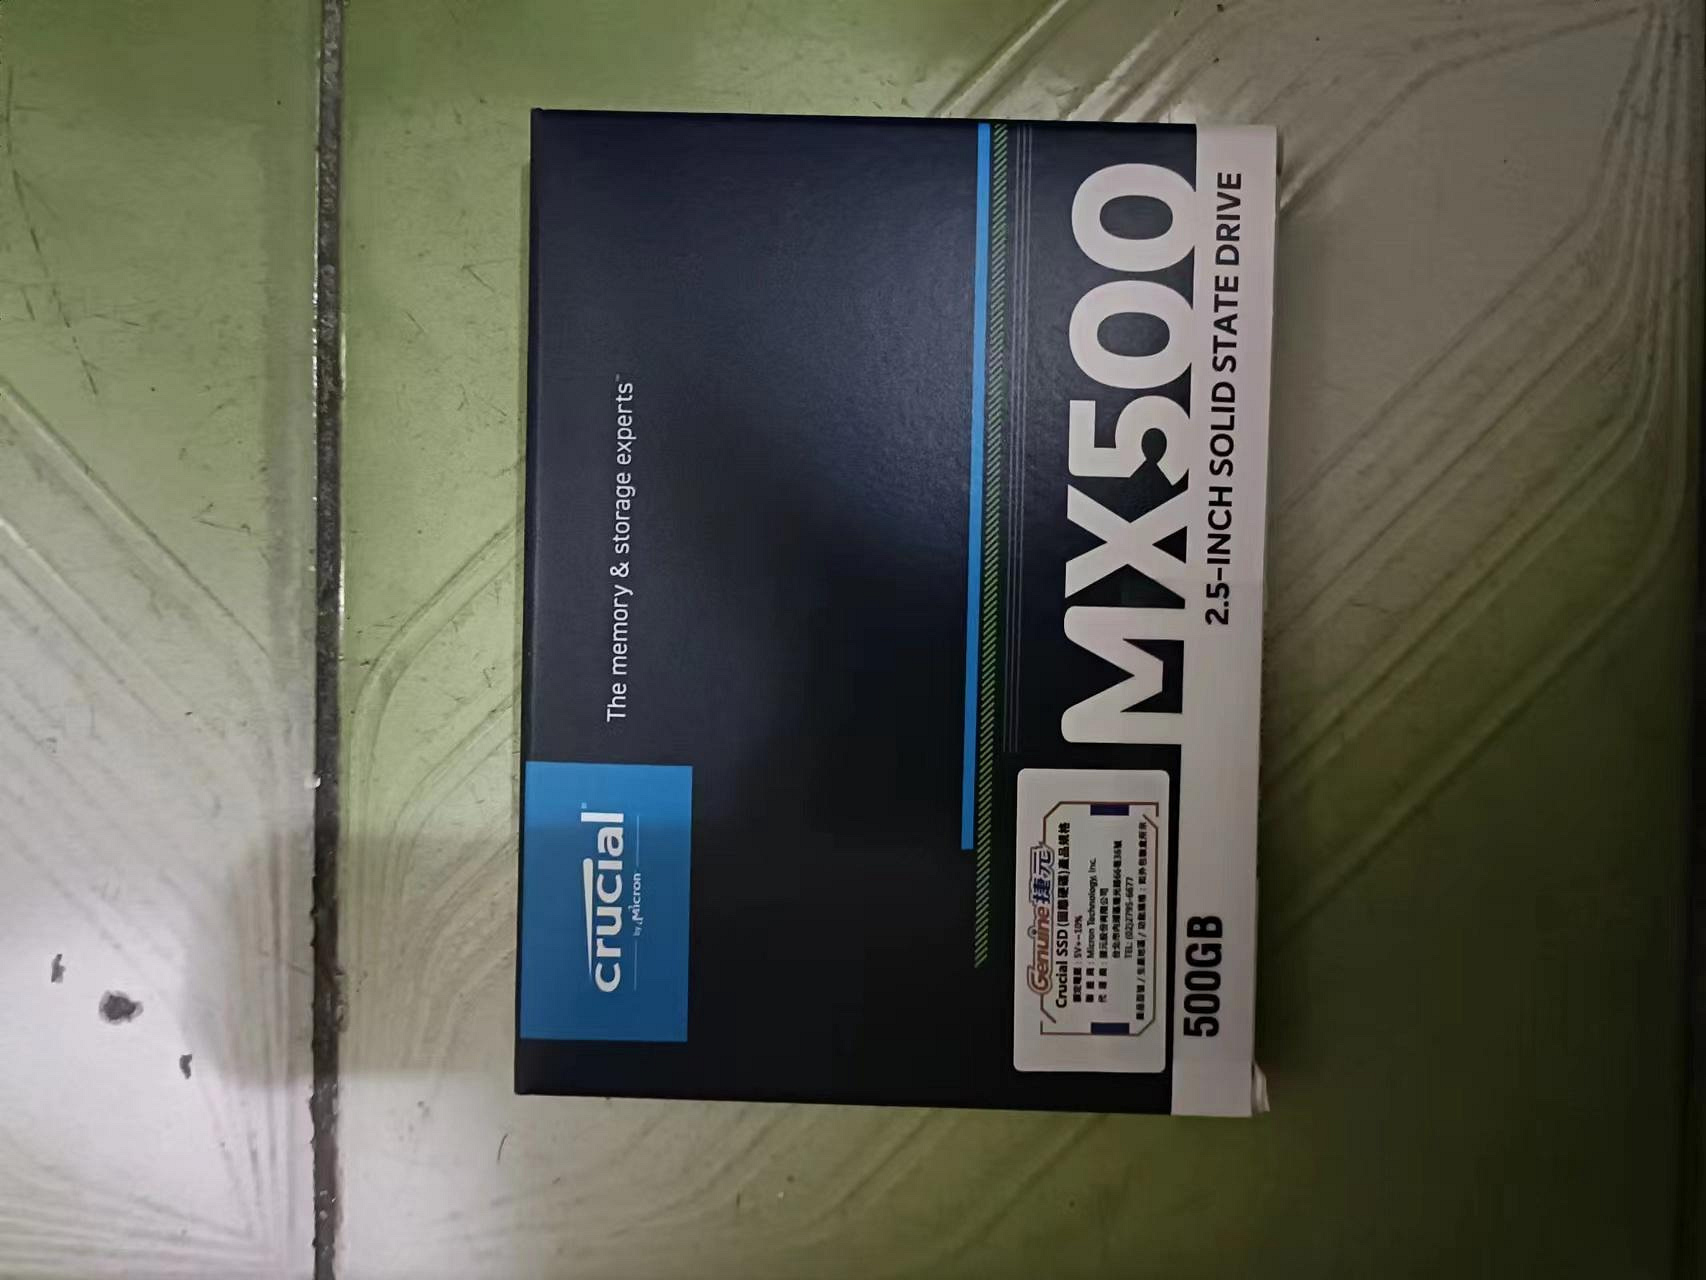 原廠換新品Micron 美光 Crucial   MX500 500G SSD 2.5吋固態硬碟  保內114.07.13